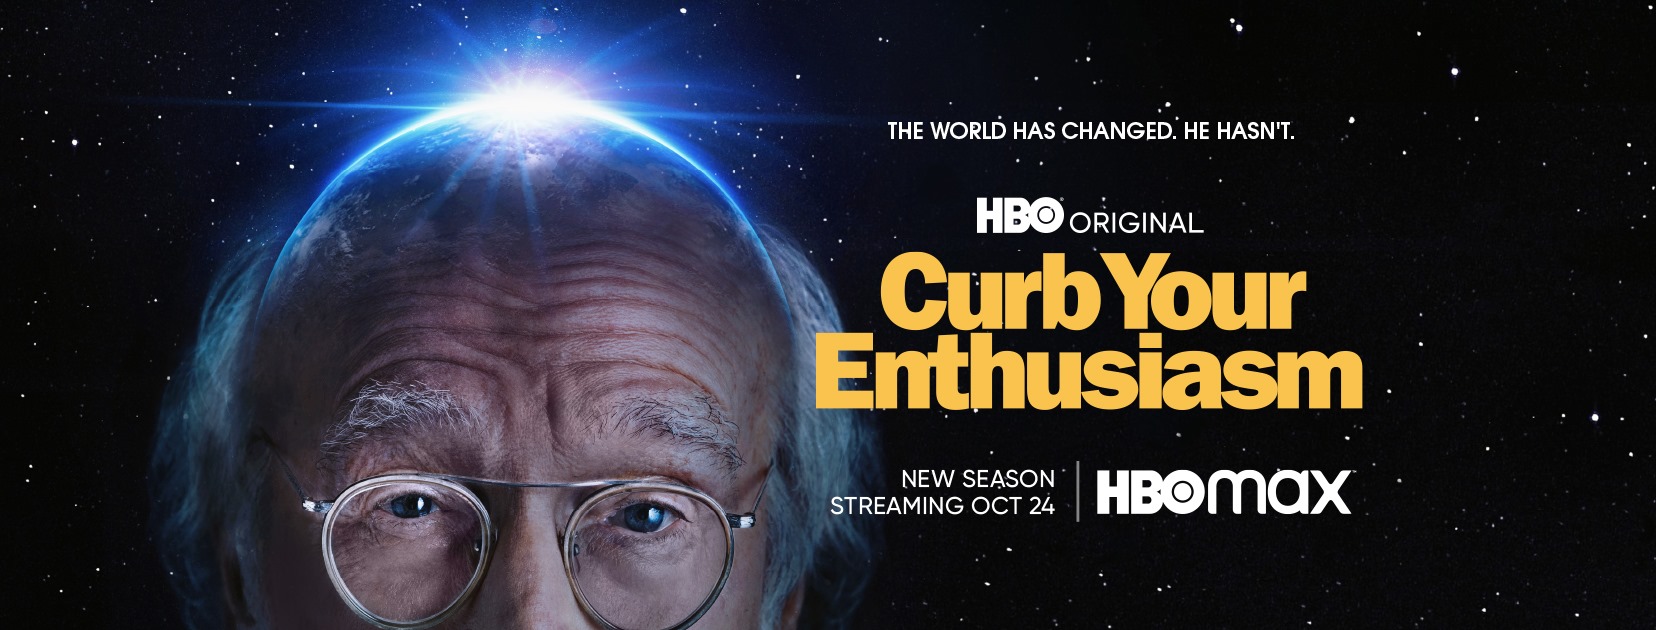 curb your enthusiasm season 7 online stream